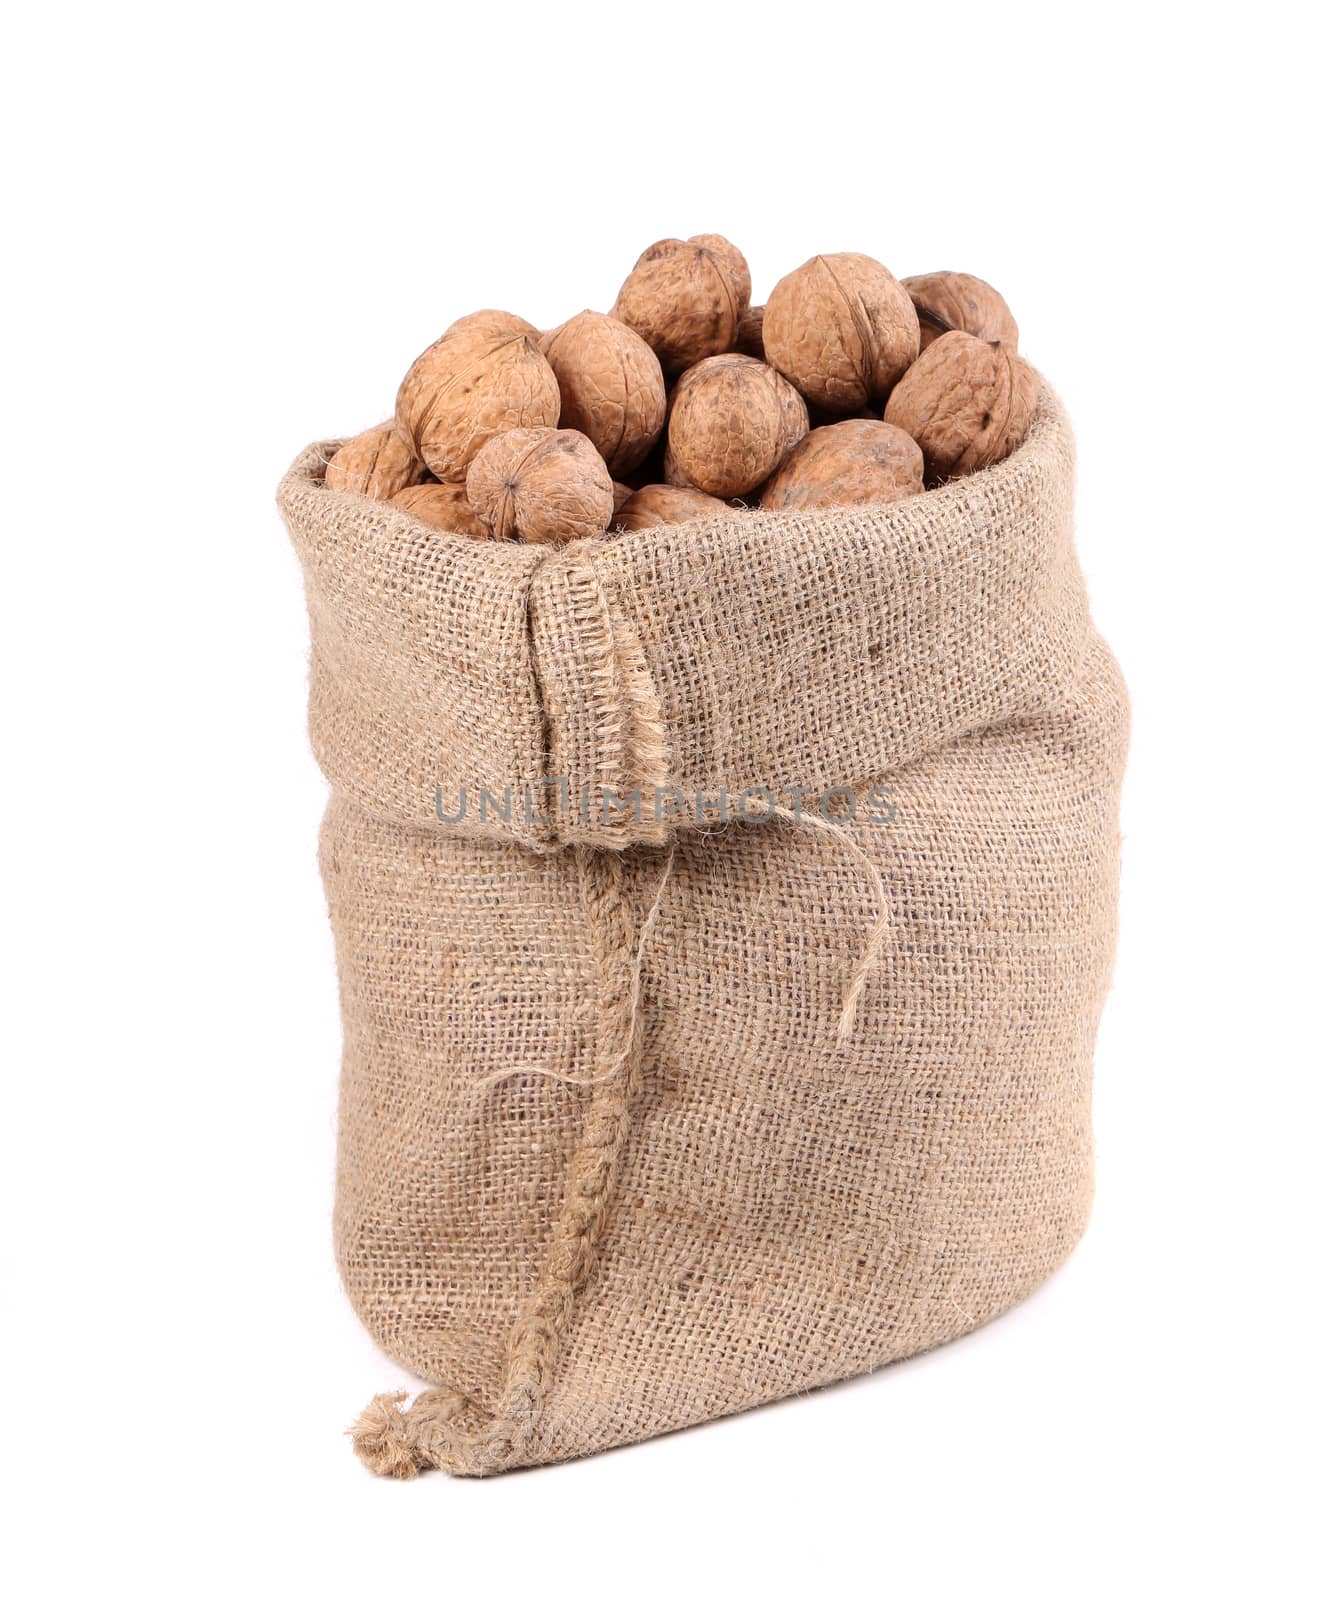 Walnuts in burlap bag. by indigolotos